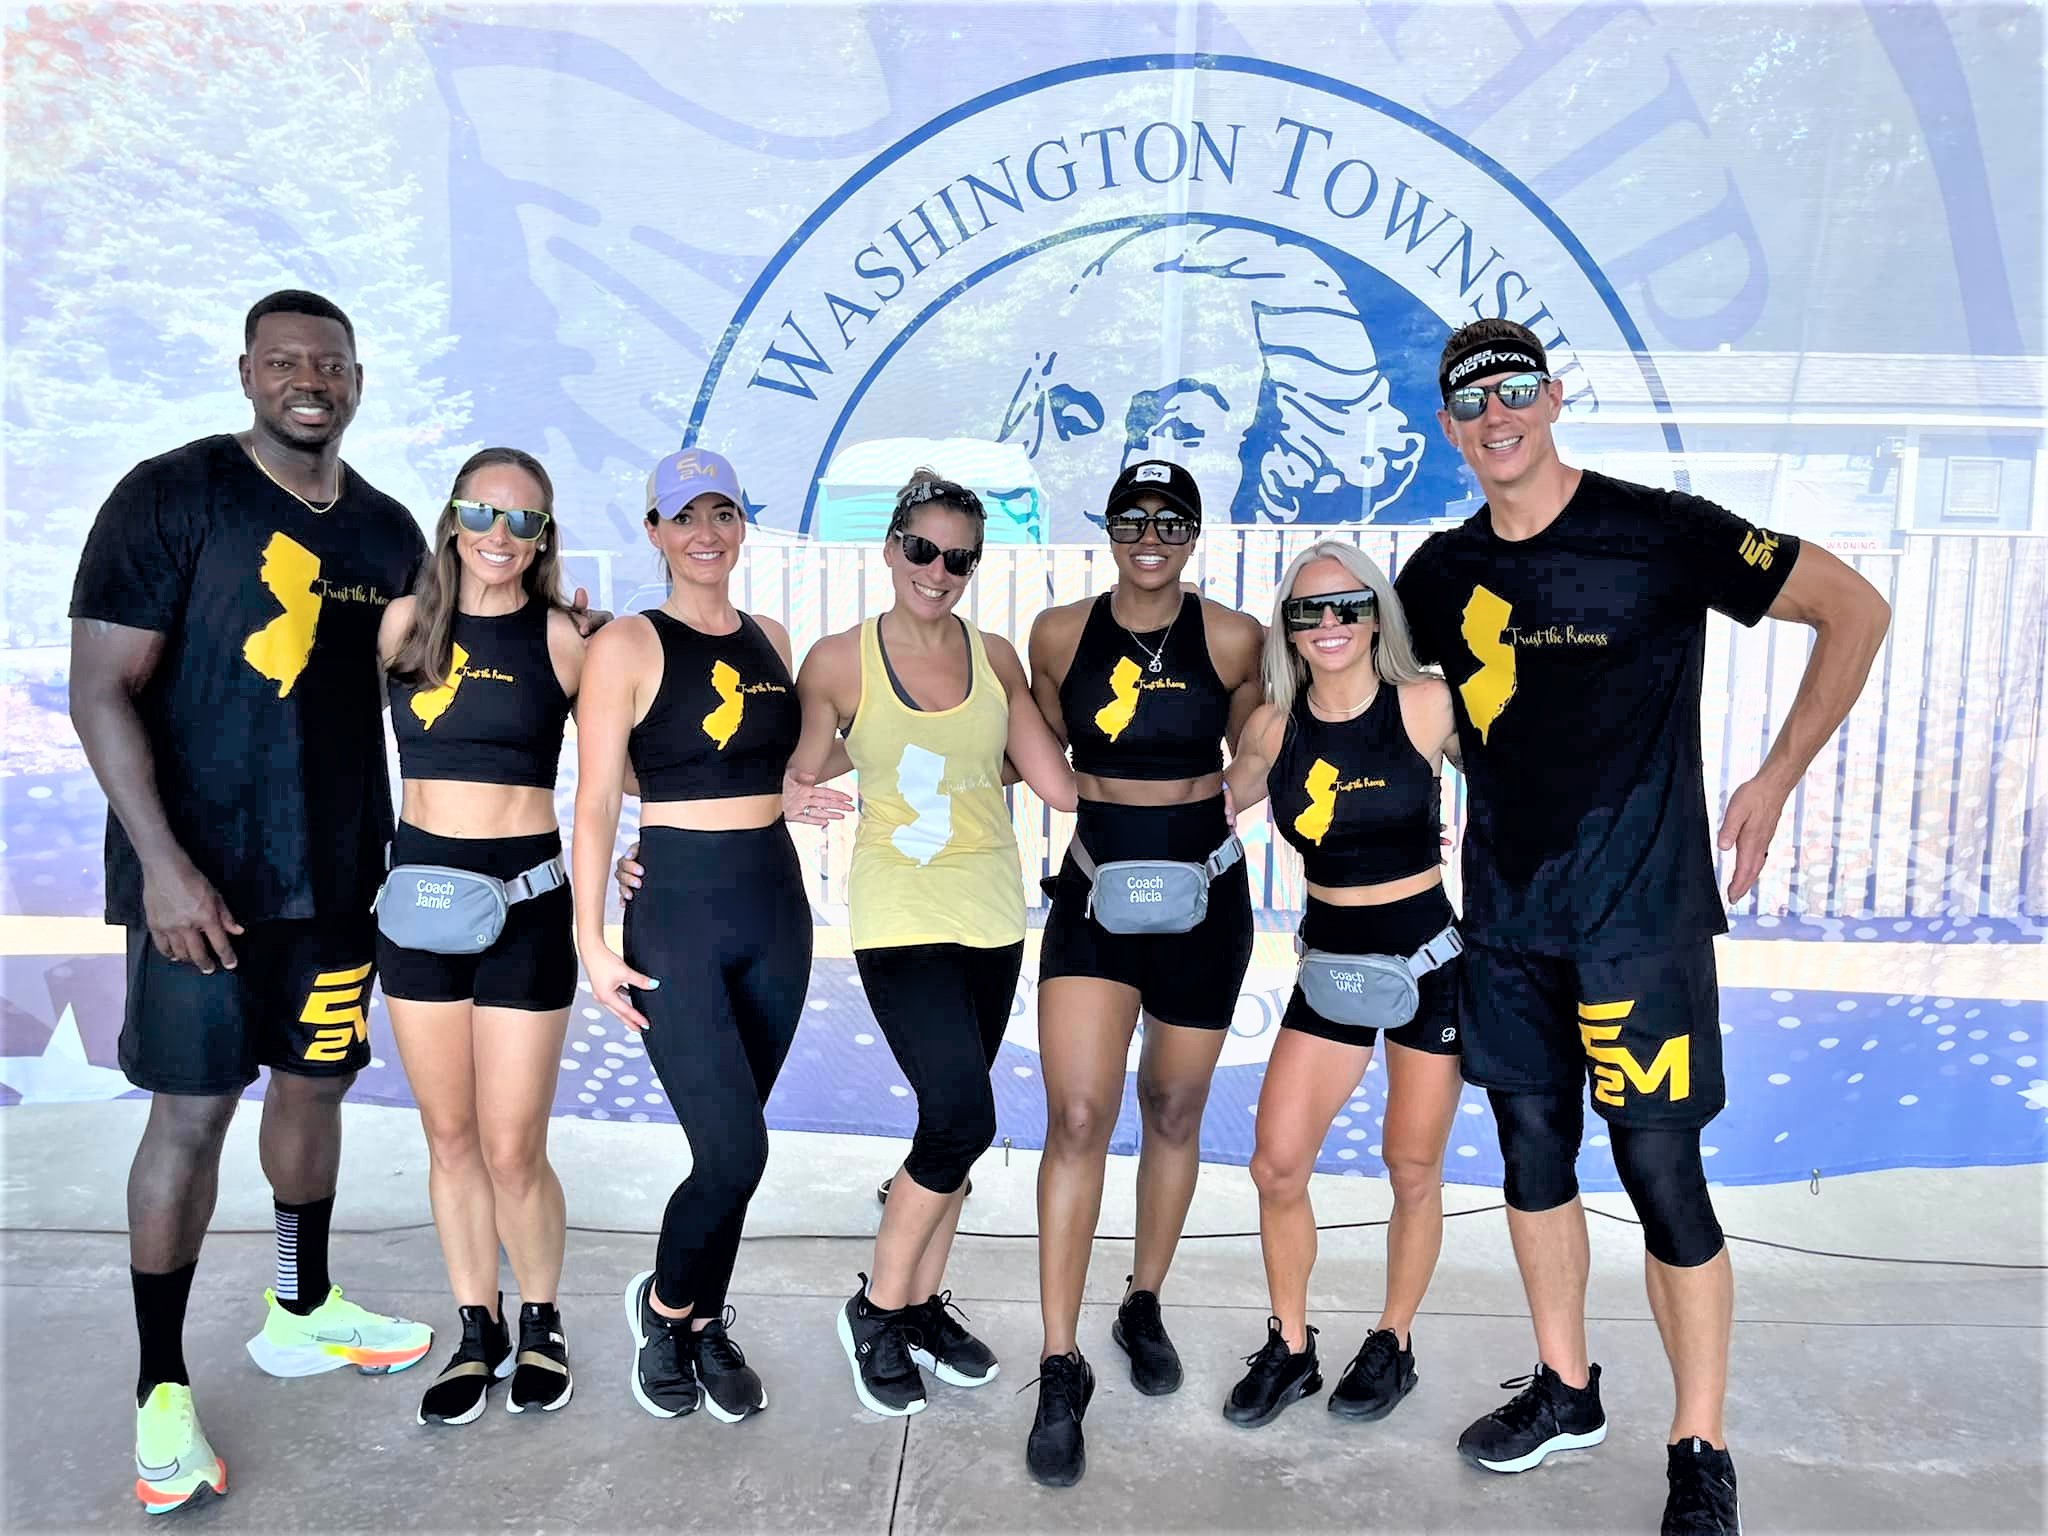 Washington Lake Park hosts Eager To Motivate Fitness Training